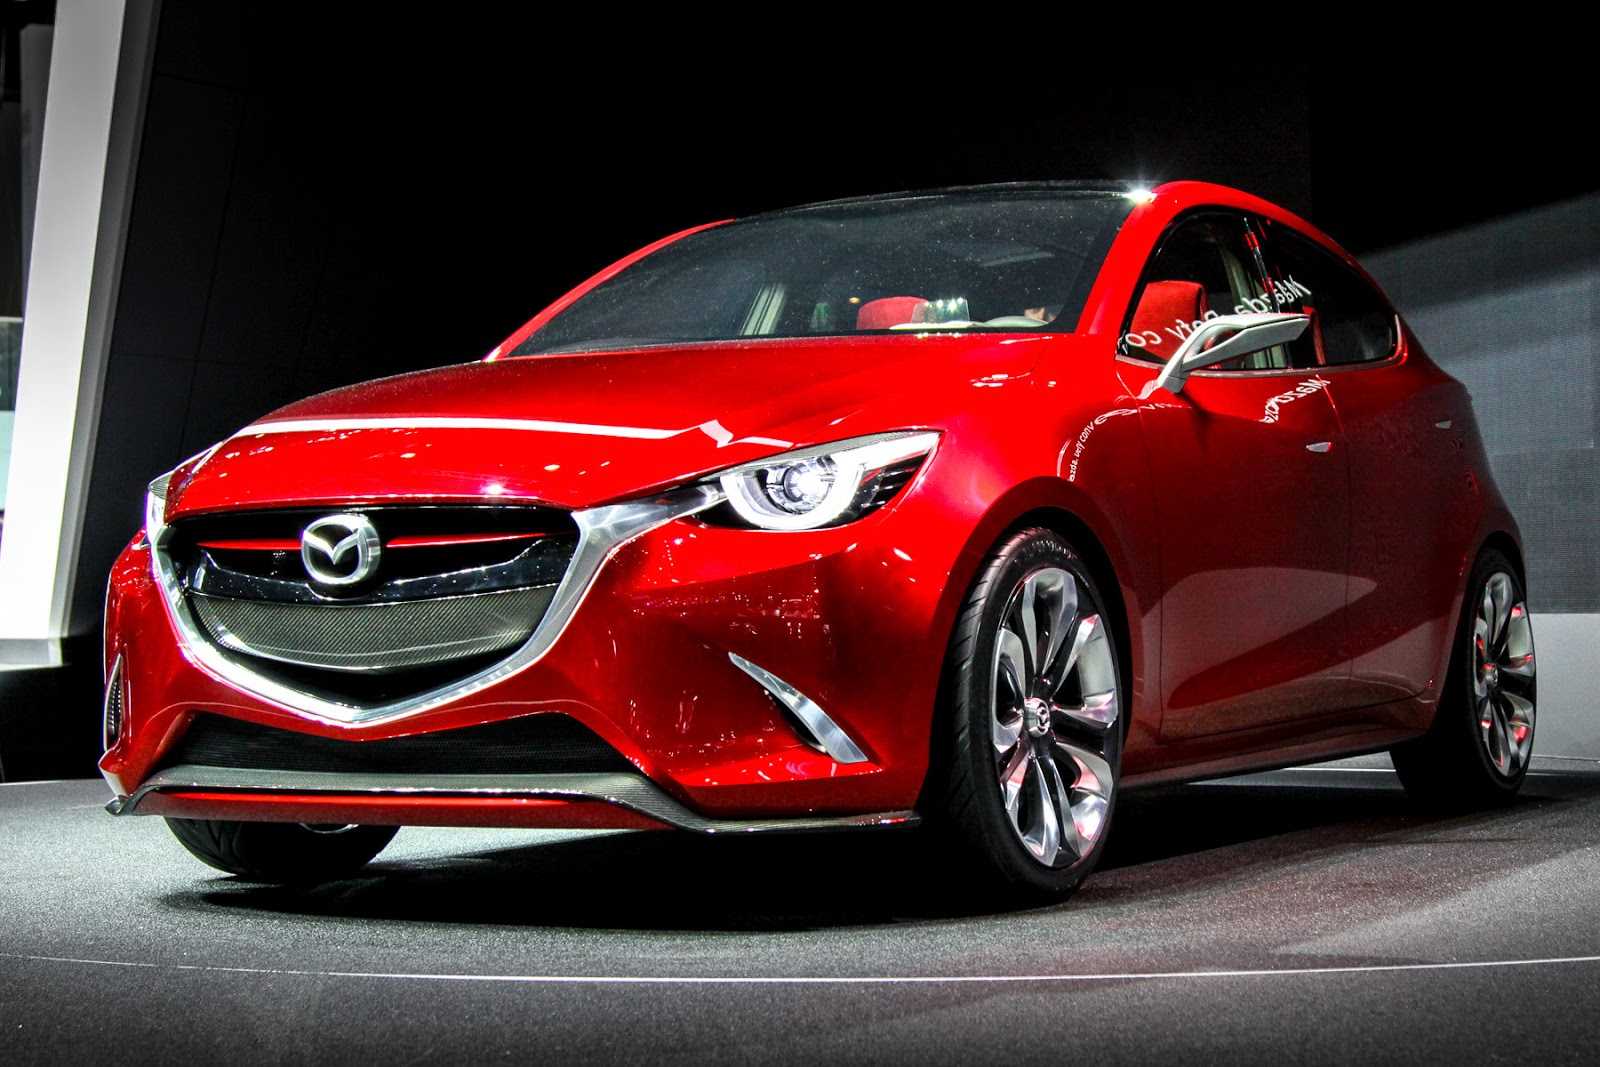 Mazda - полный каталог моделей, характеристики, отзывы на все автомобили mazda (мазда)